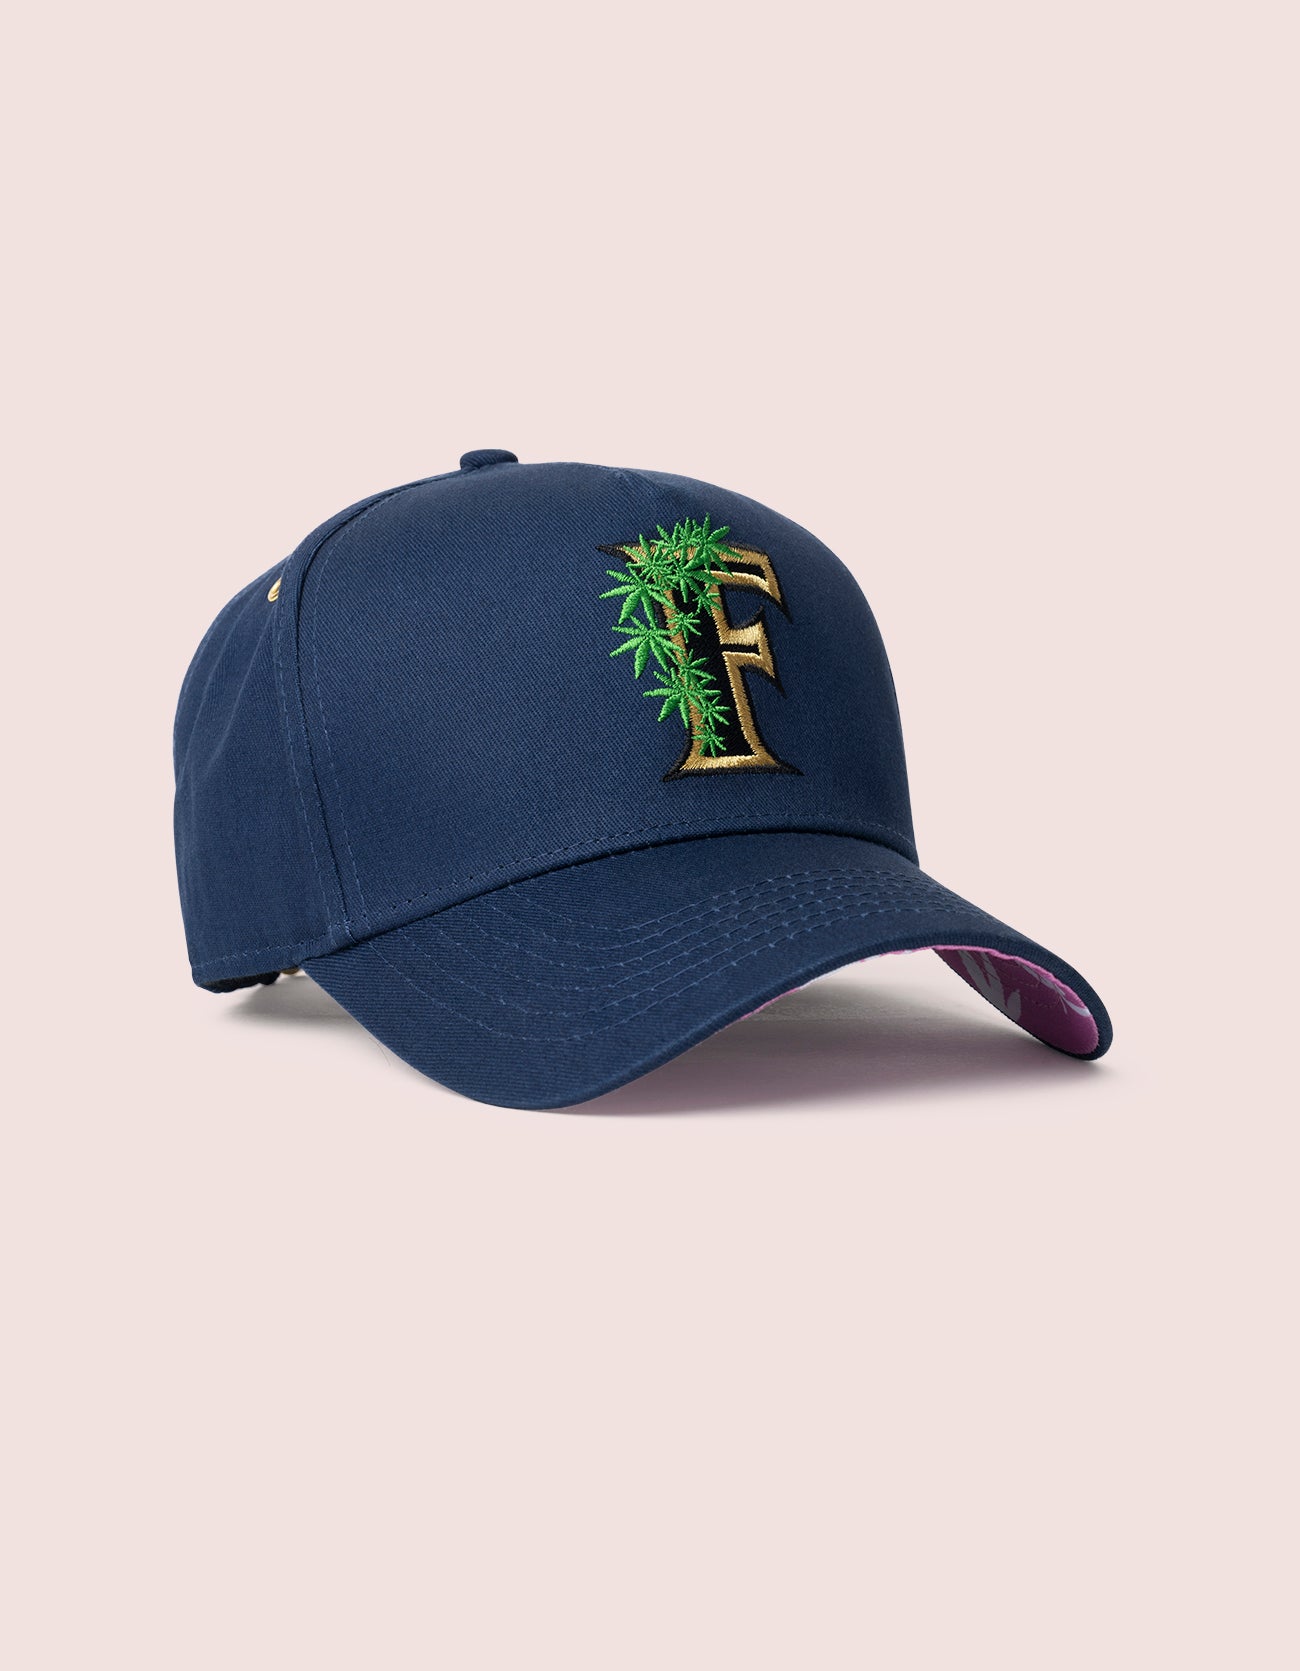 Flee Farms Navy Rockstar Hat